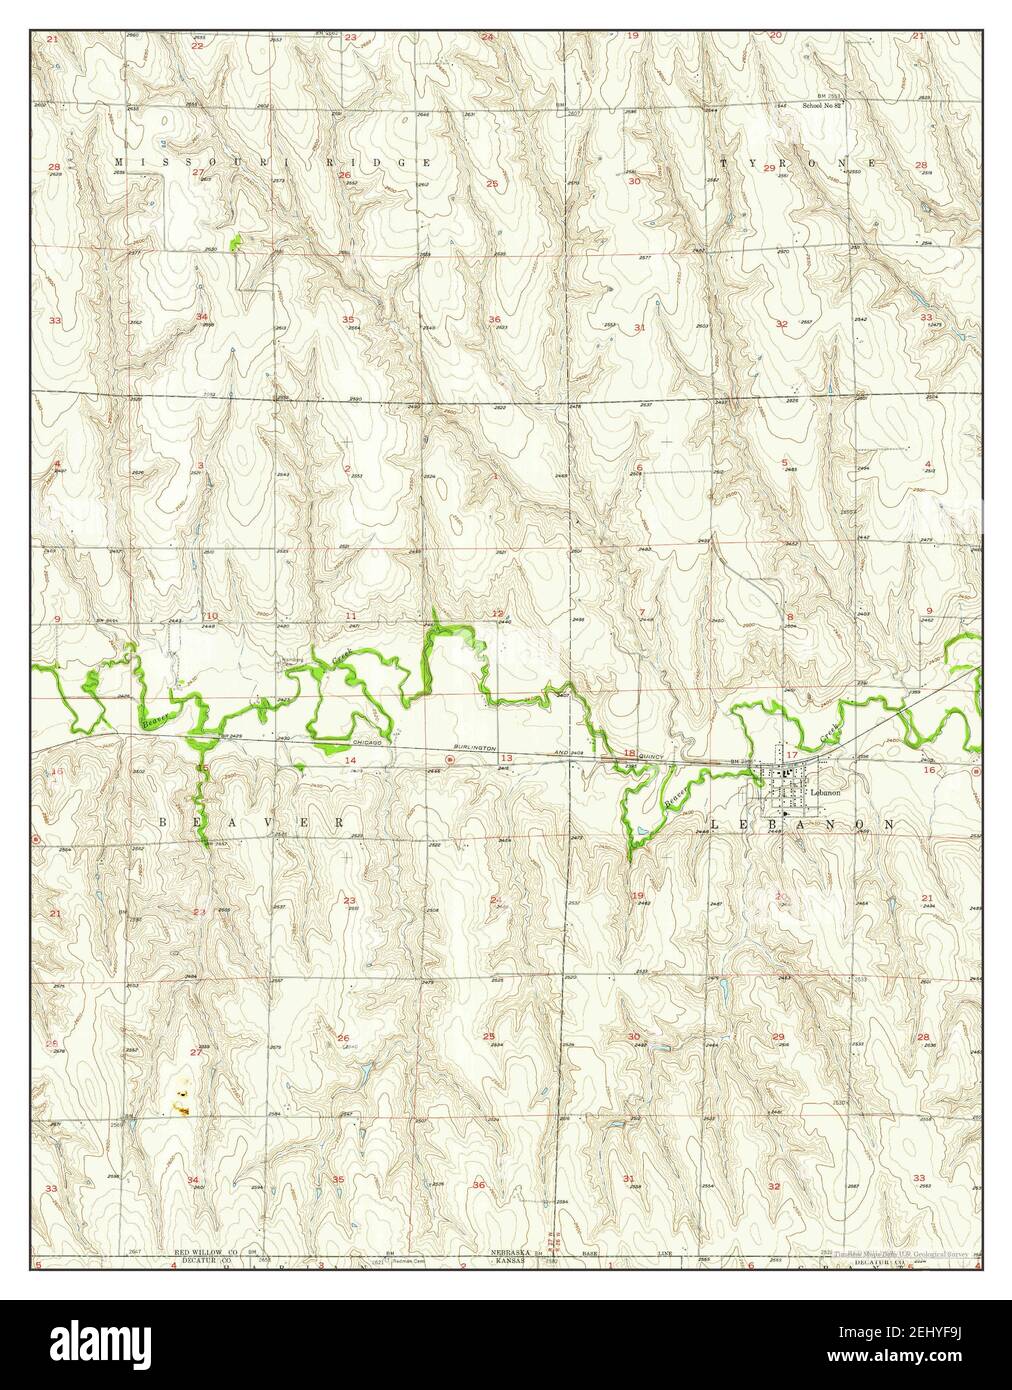 Liban, Nebraska, carte 1957, 1:24000, États-Unis d'Amérique par Timeless Maps, données U.S. Geological Survey Banque D'Images